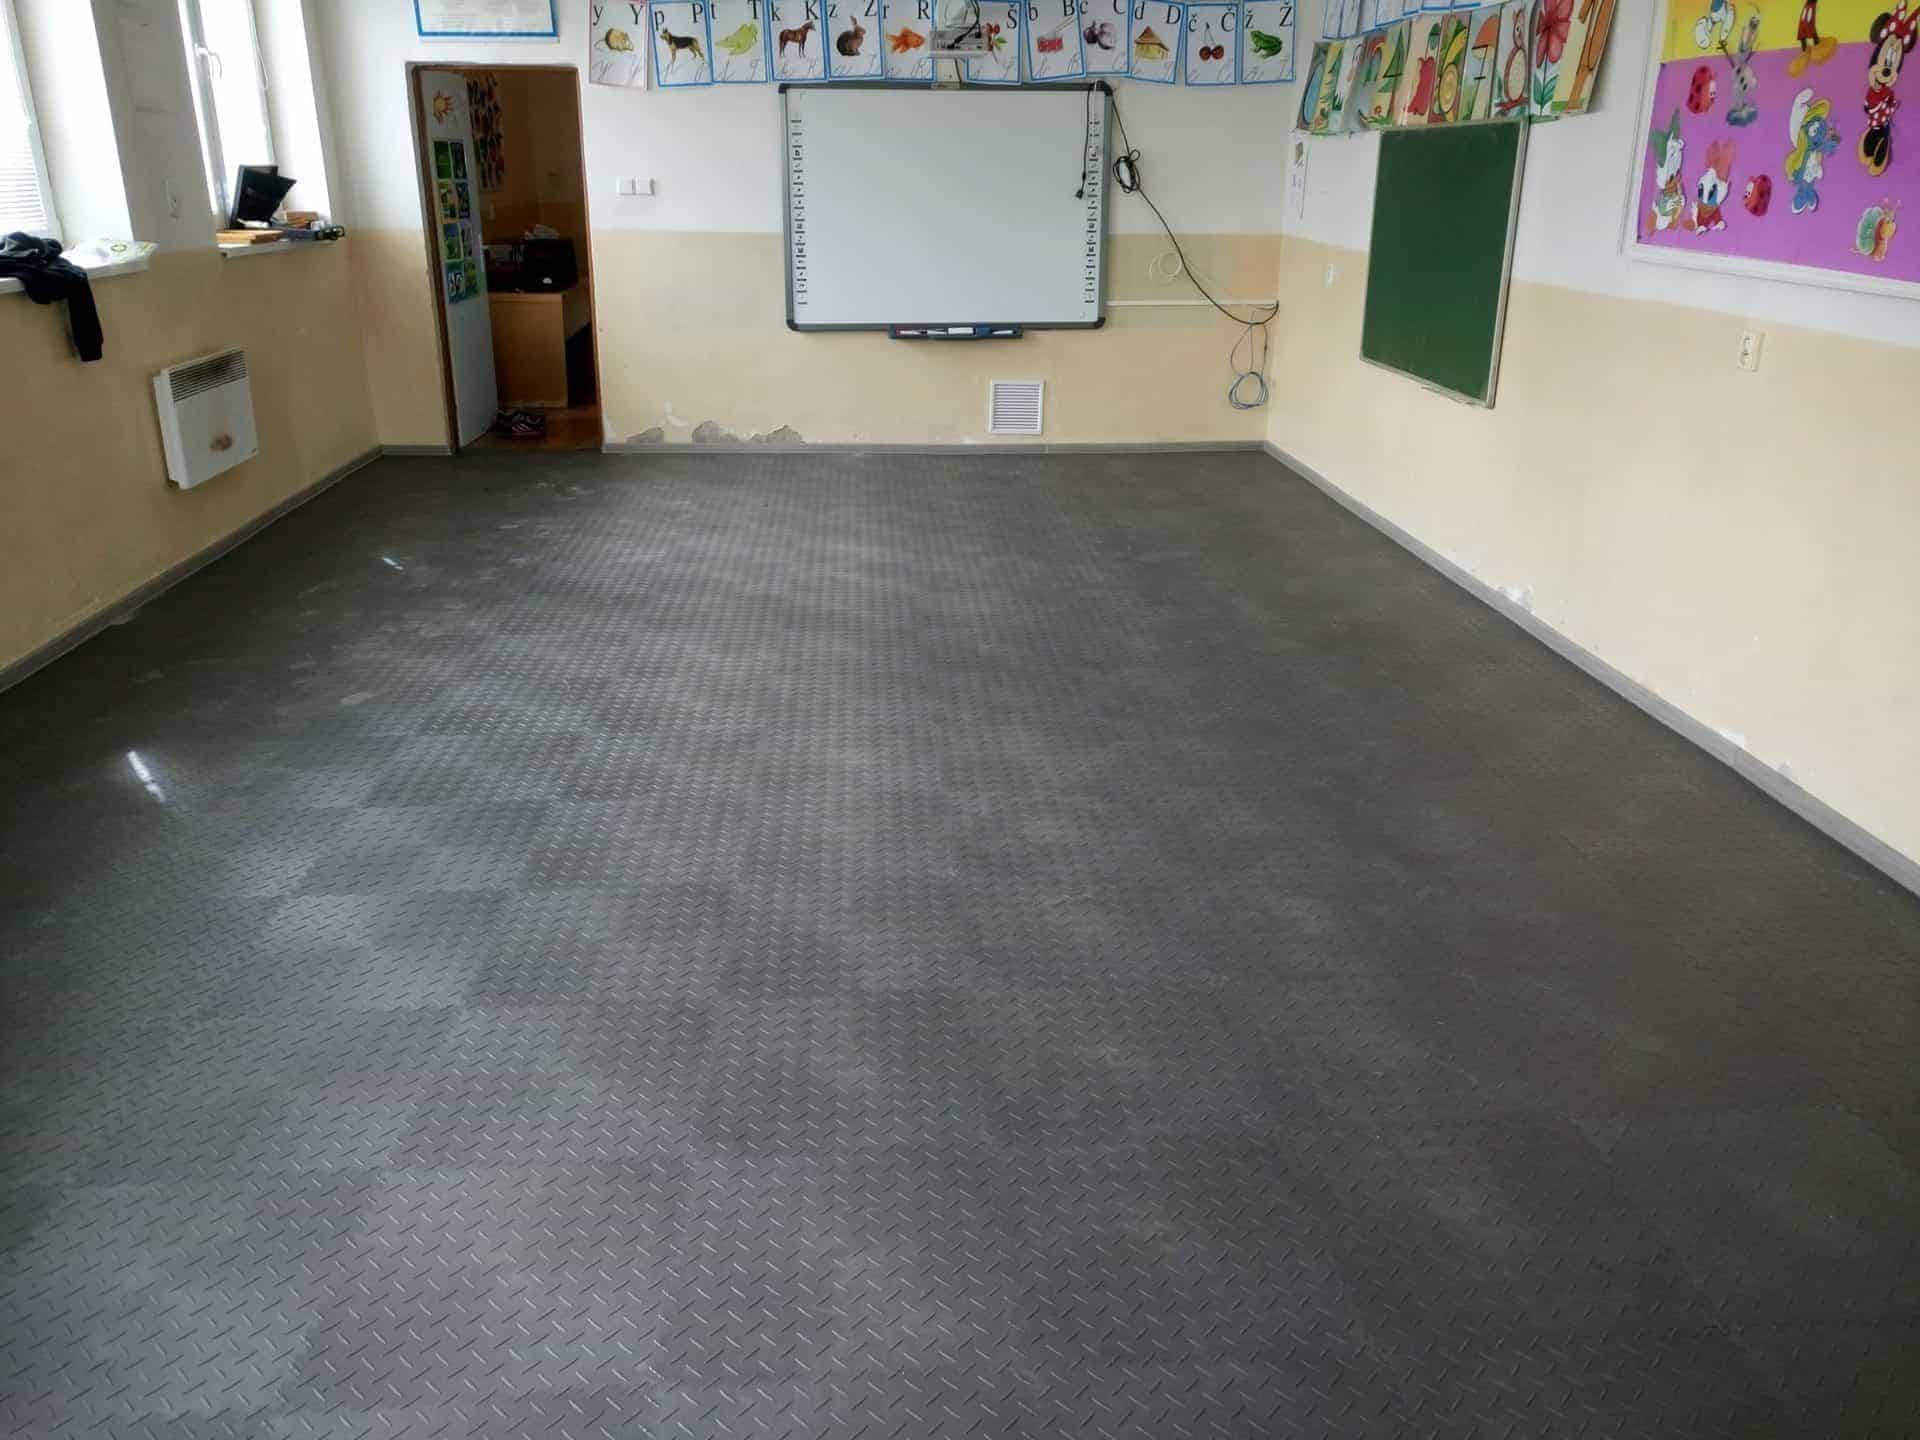 Általános iskolai padló, Szlovákia